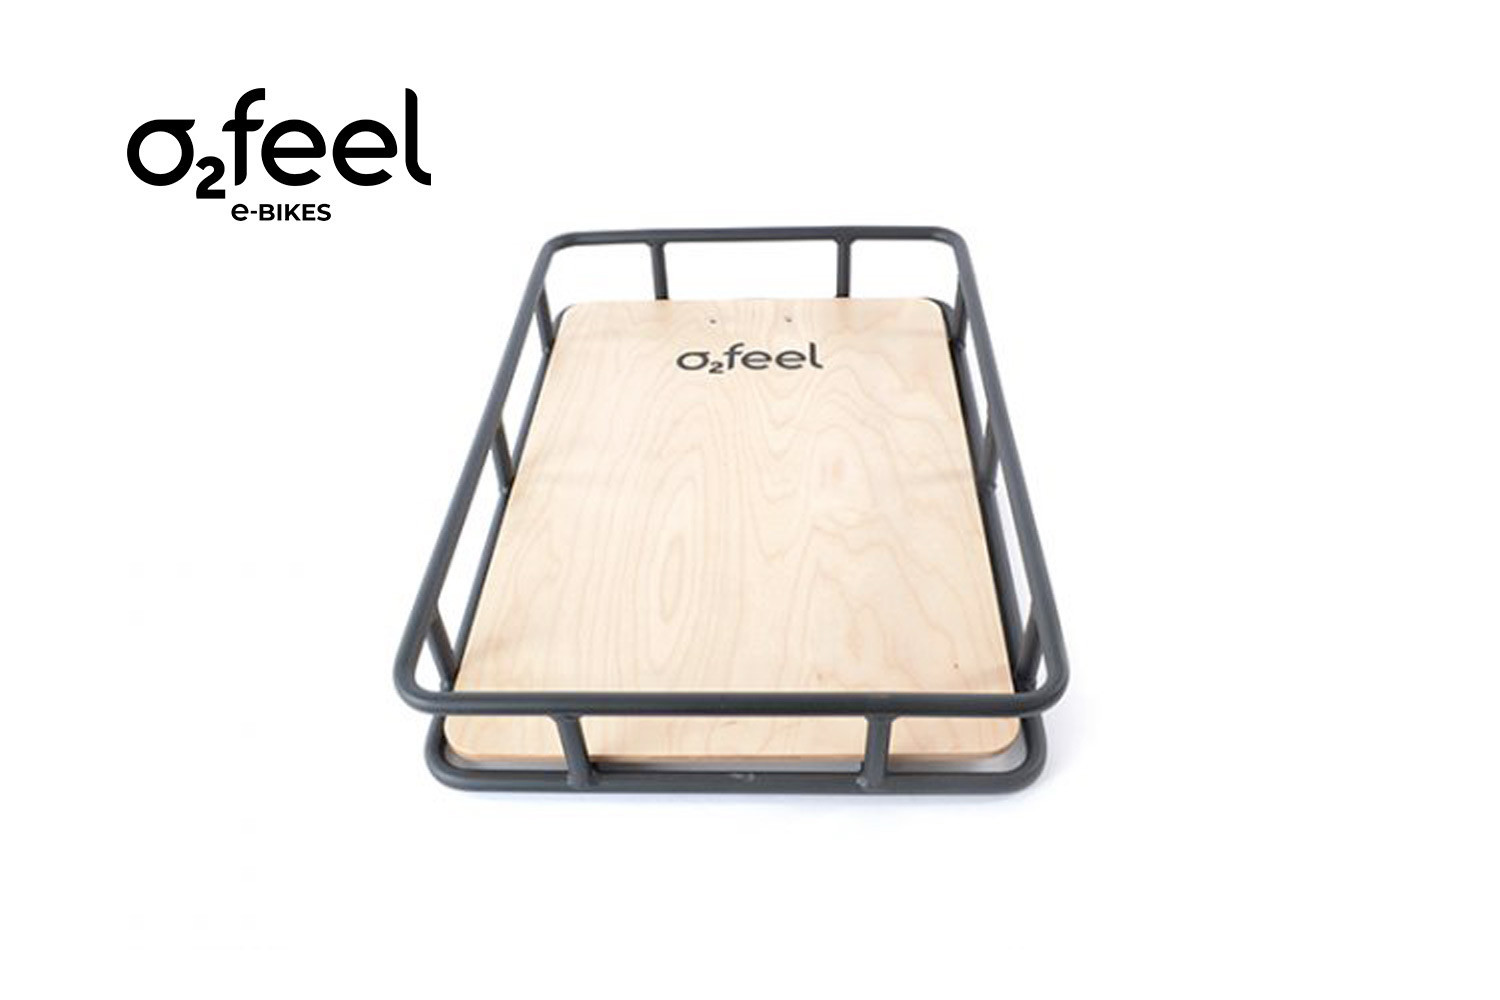 Maxi Platform O2feel, la plateforme en bois pour tout transporter sur votre vélo électrique.